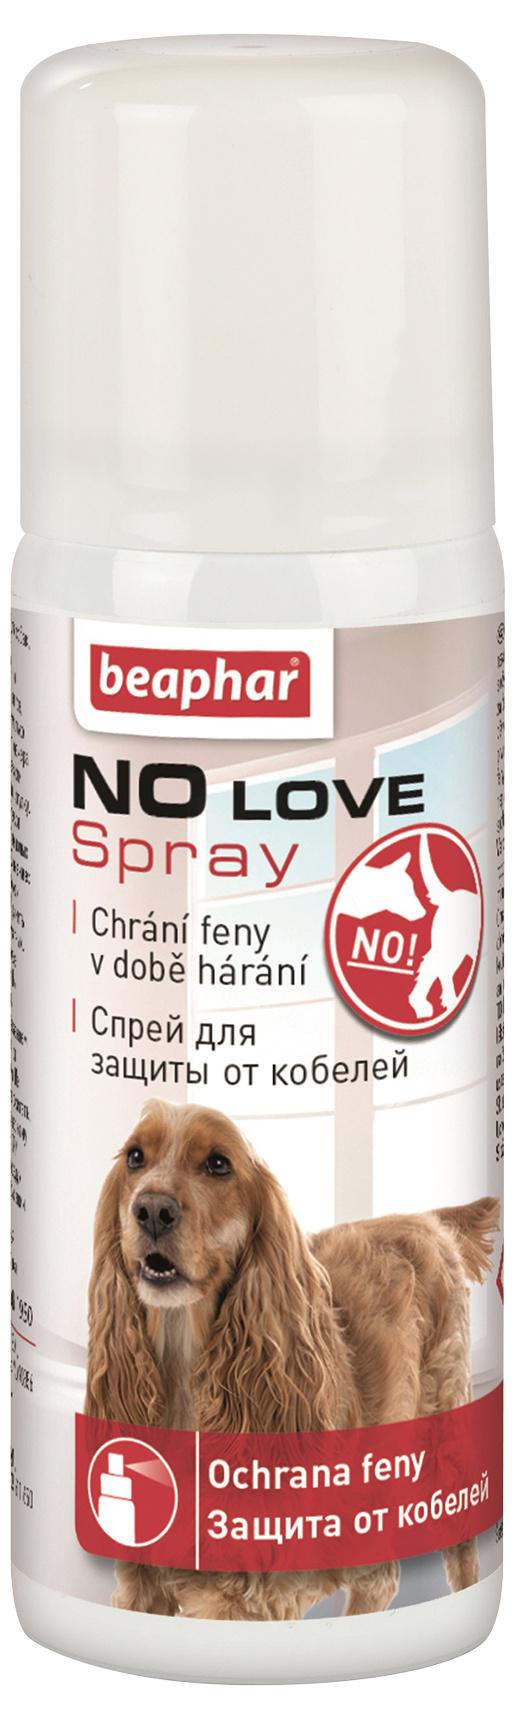 Beaphar NO LOVE spray pre hárajúce feny - 50ml